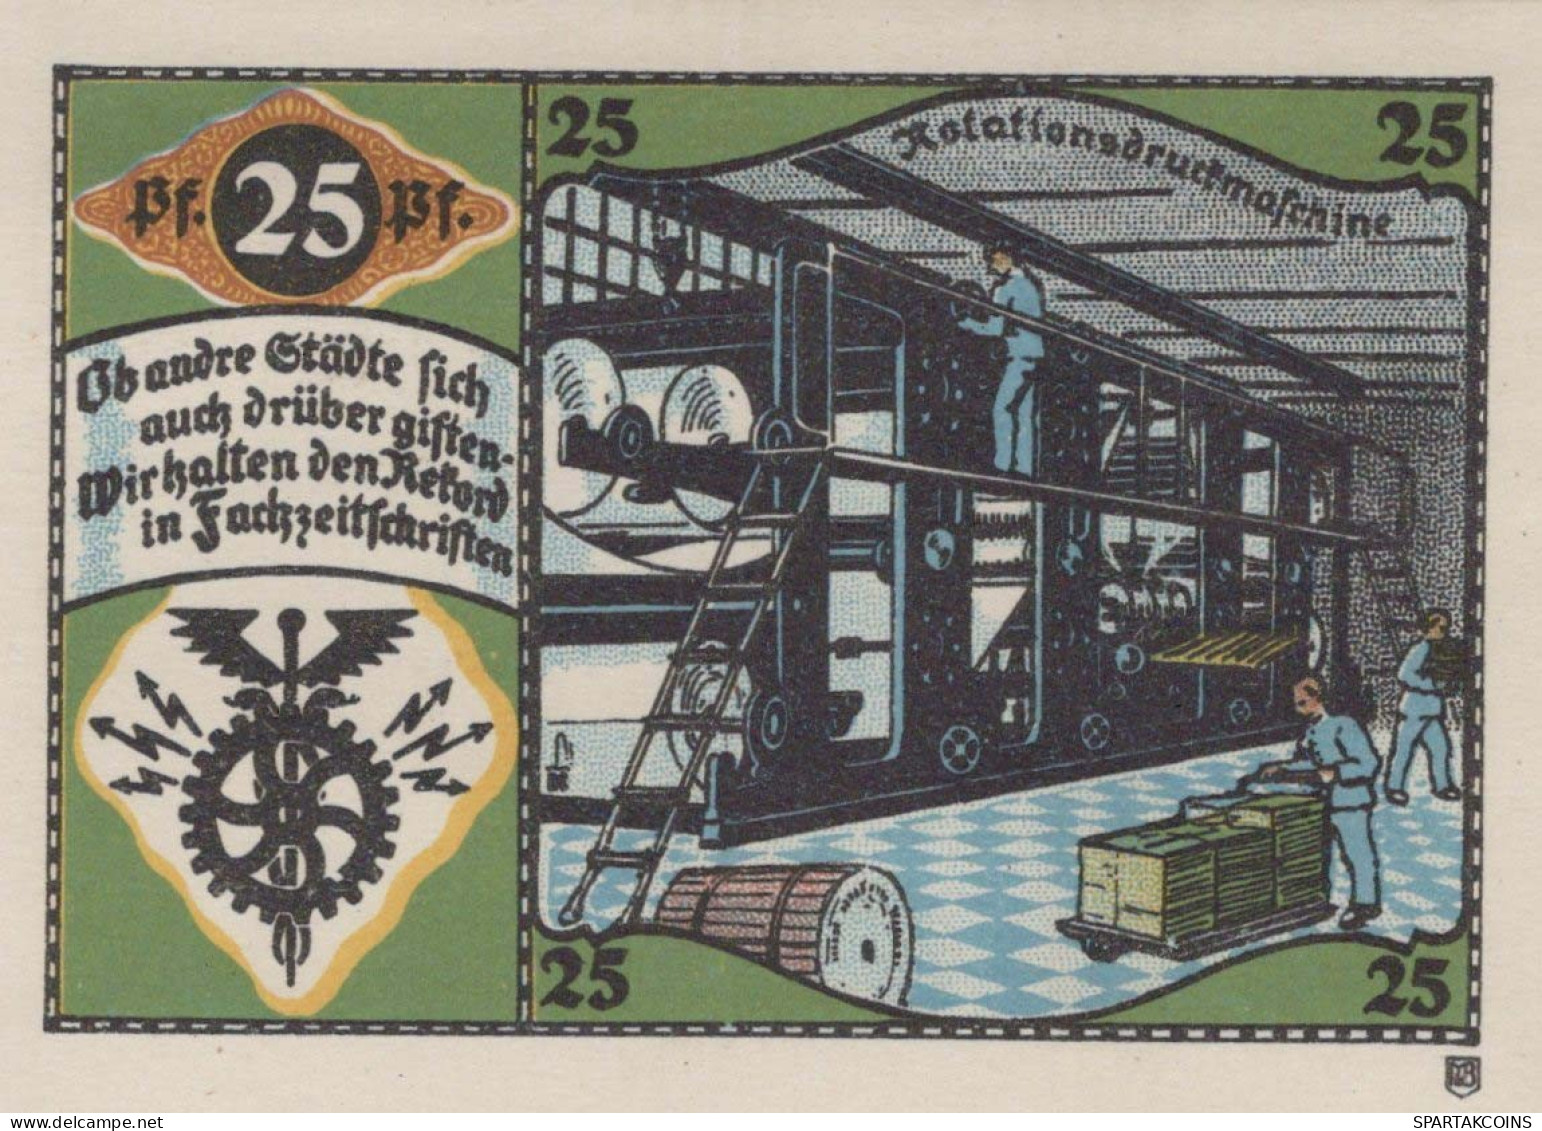 25 PFENNIG 1921 Stadt PÖSSNECK Thuringia UNC DEUTSCHLAND Notgeld Banknote #PB662 - [11] Local Banknote Issues